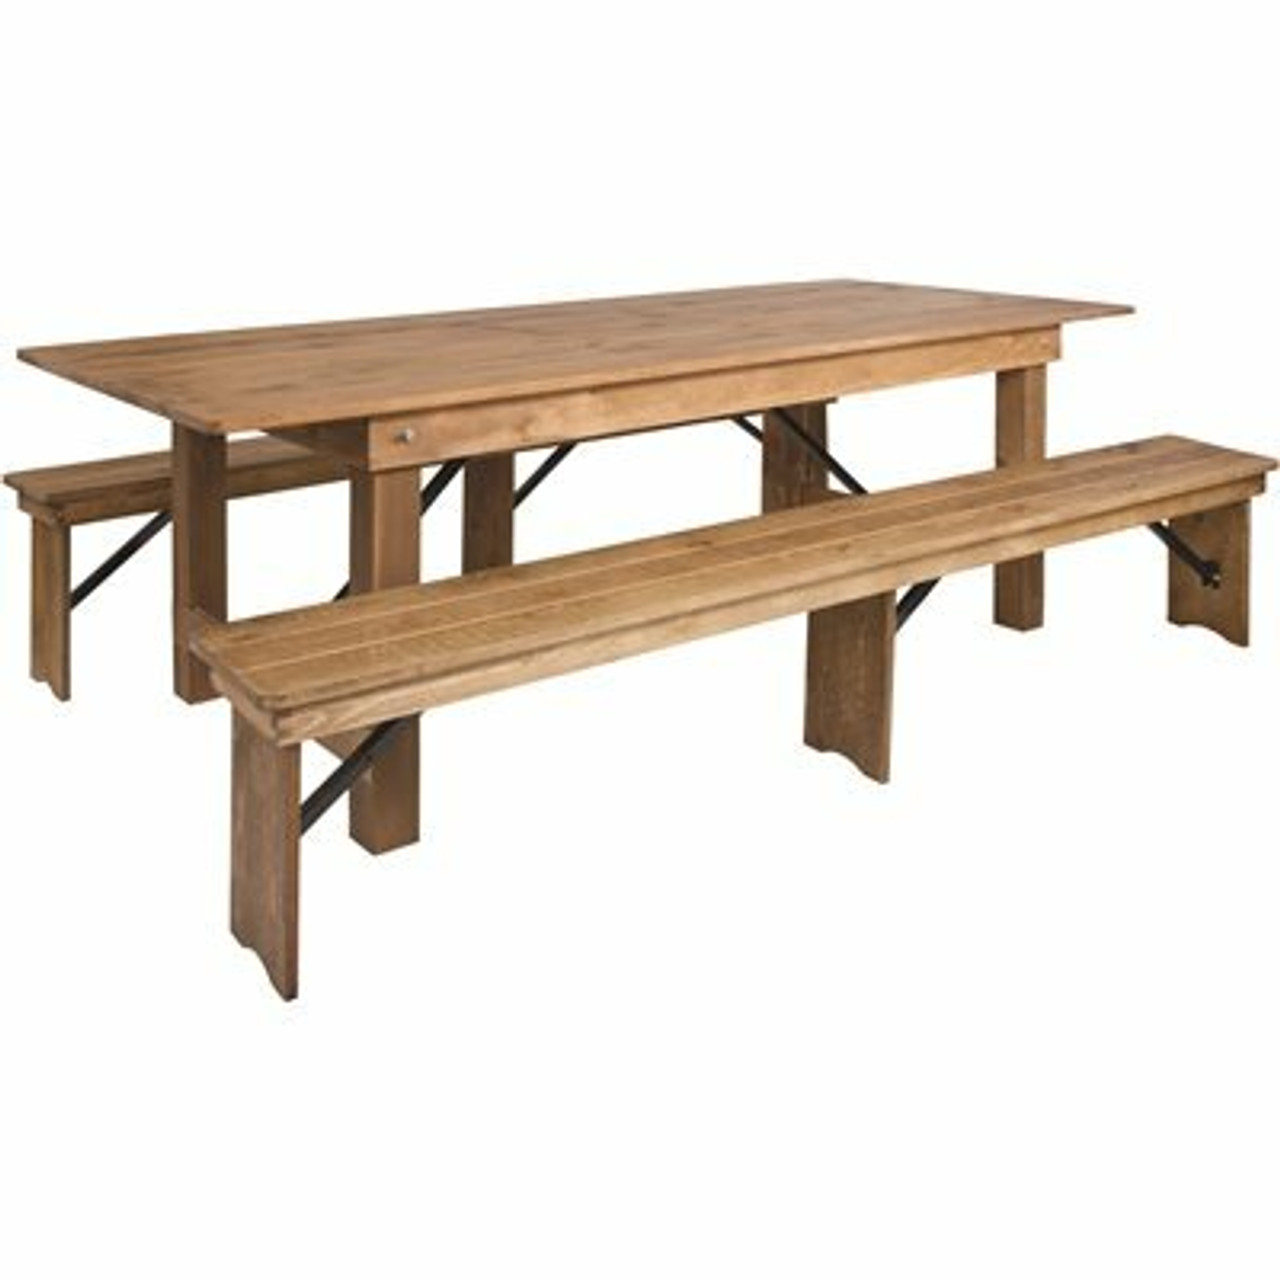 Carnegy Avenue 5-Piece Antique Rustic Farm Table Set - 311524265